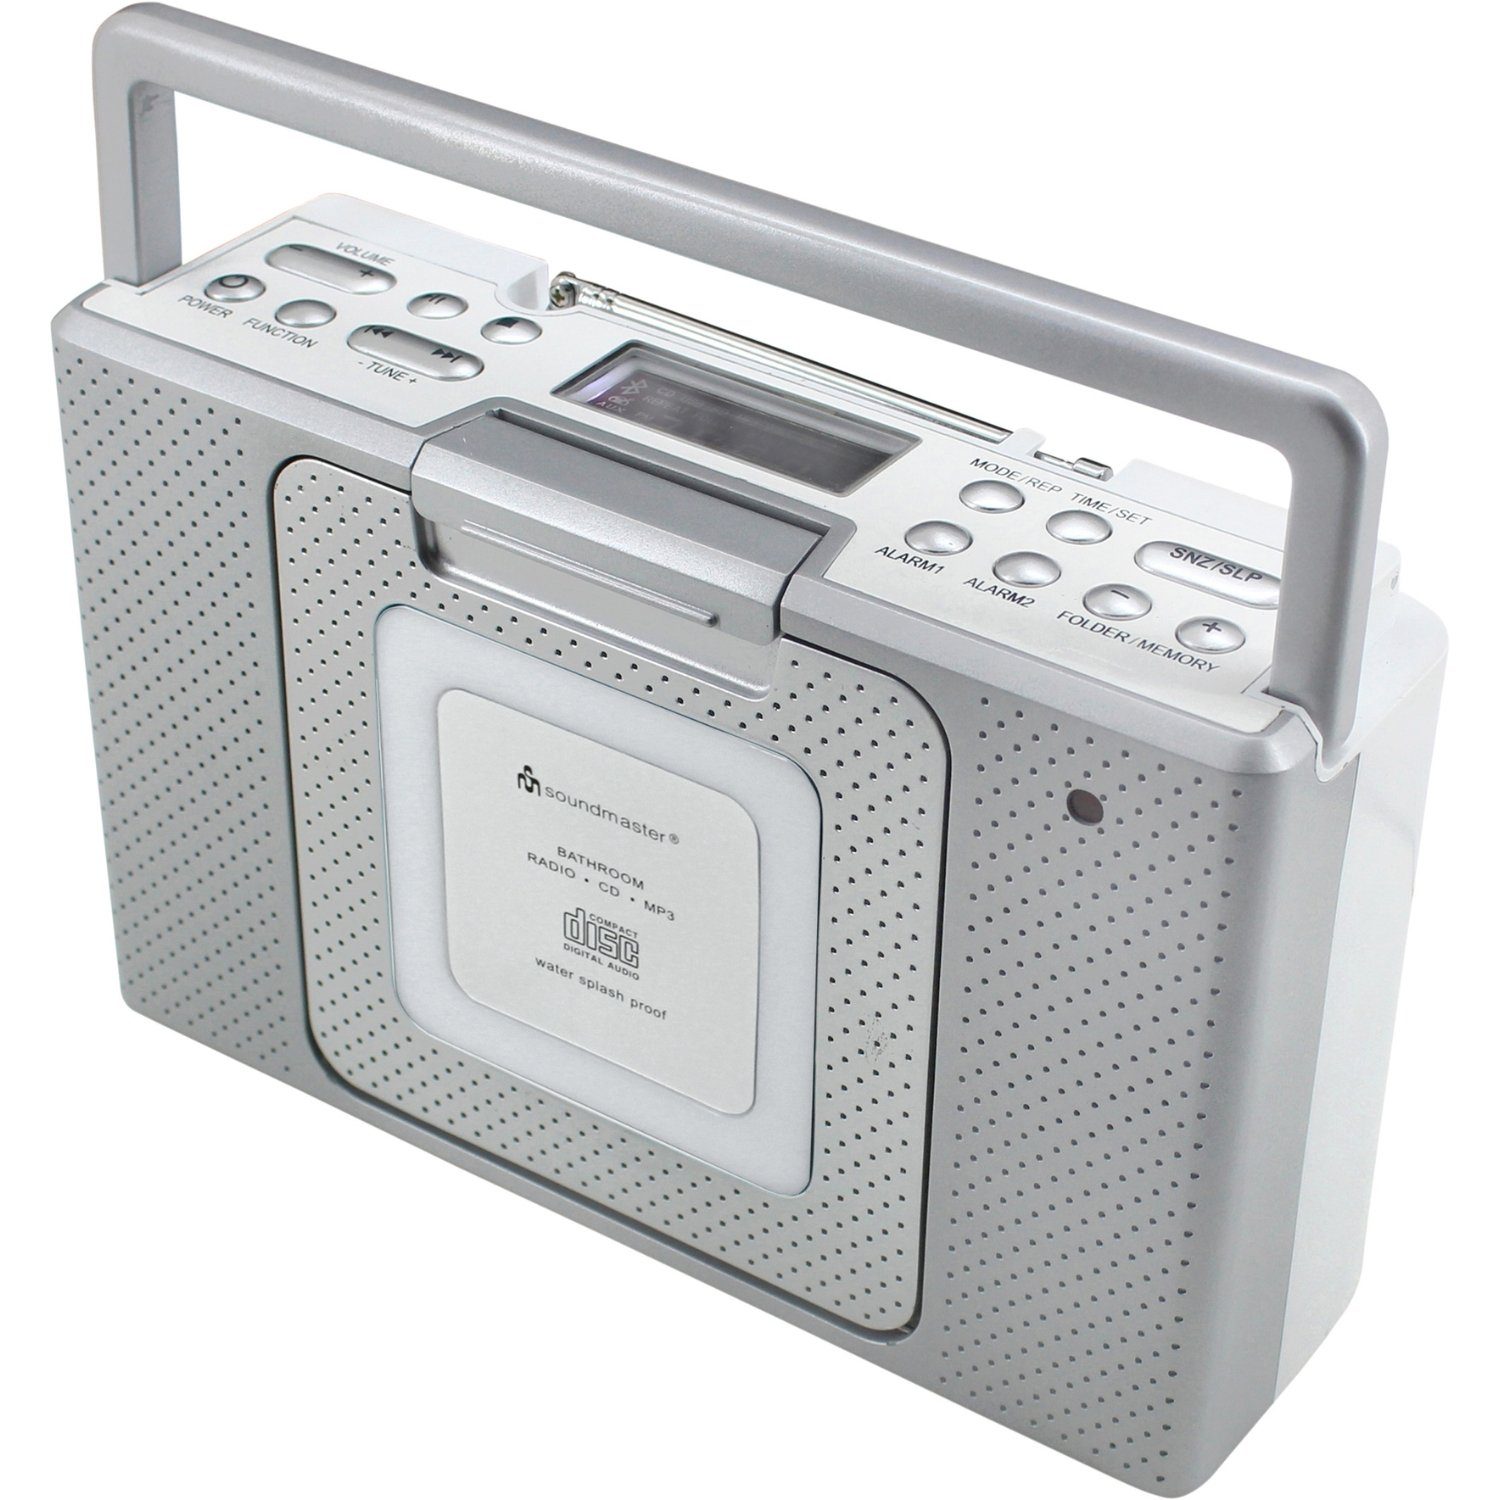 Soundmaster IPX4 BCD480 Uhr Küchenradio CD Badradio Radio spritzwassergeschützt Küchen-Radio